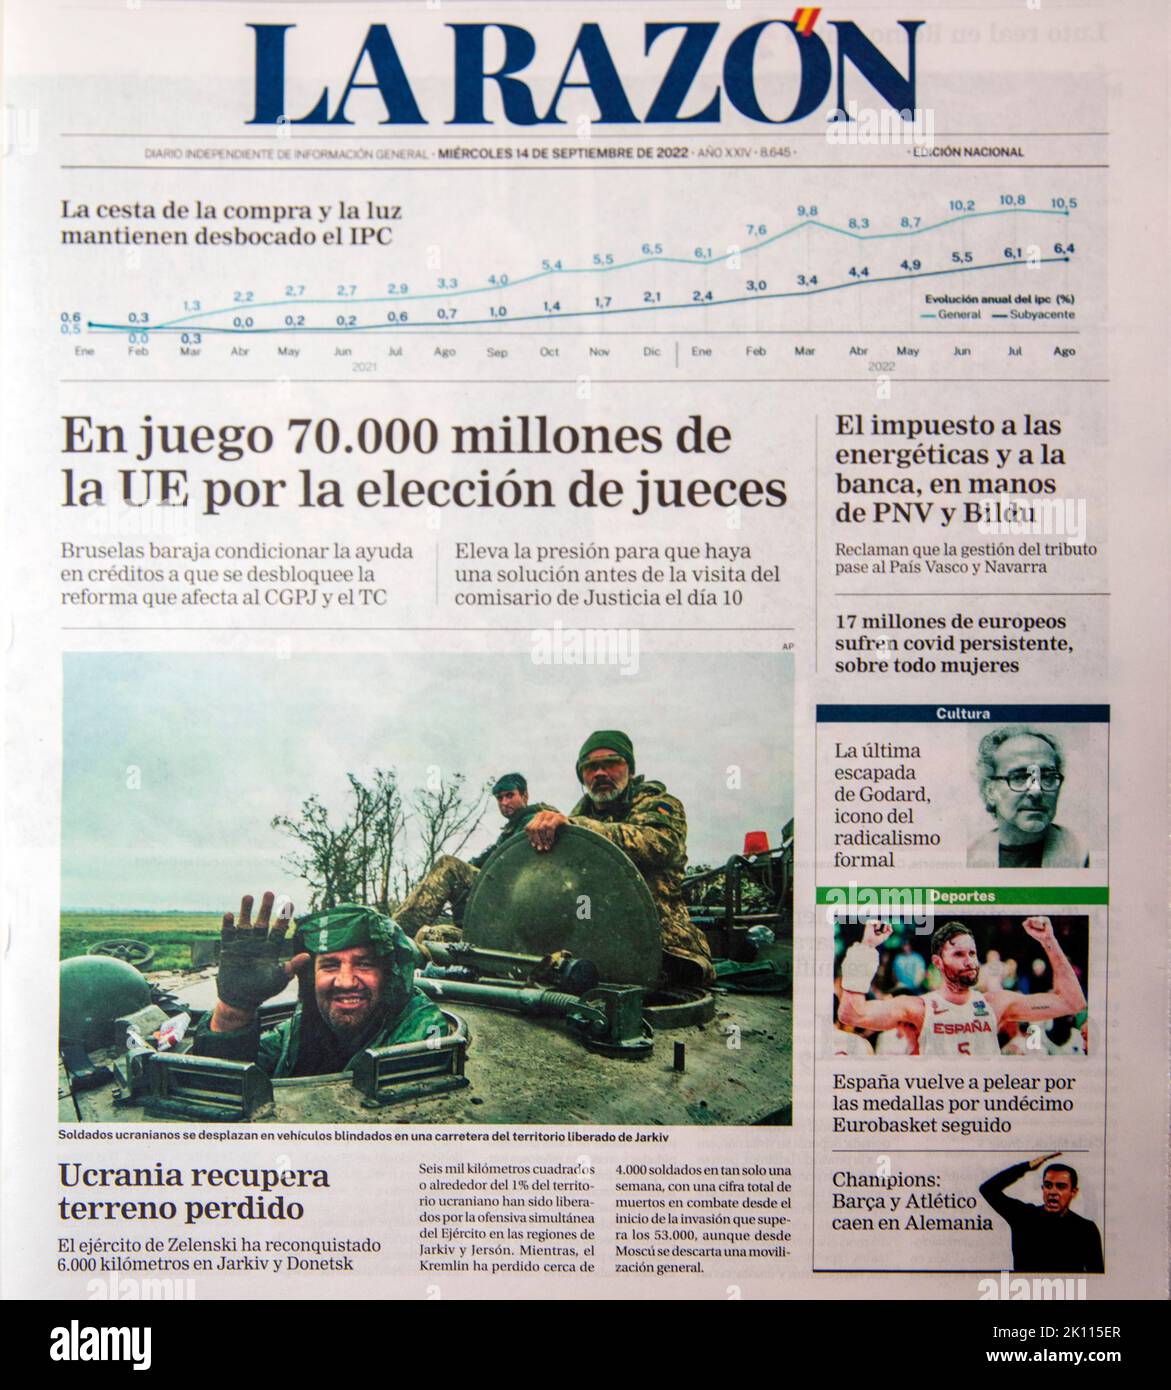 Teilbild der Titelseite der spanischen Zeitung La Razon für den 14. September 2022 Stockfoto